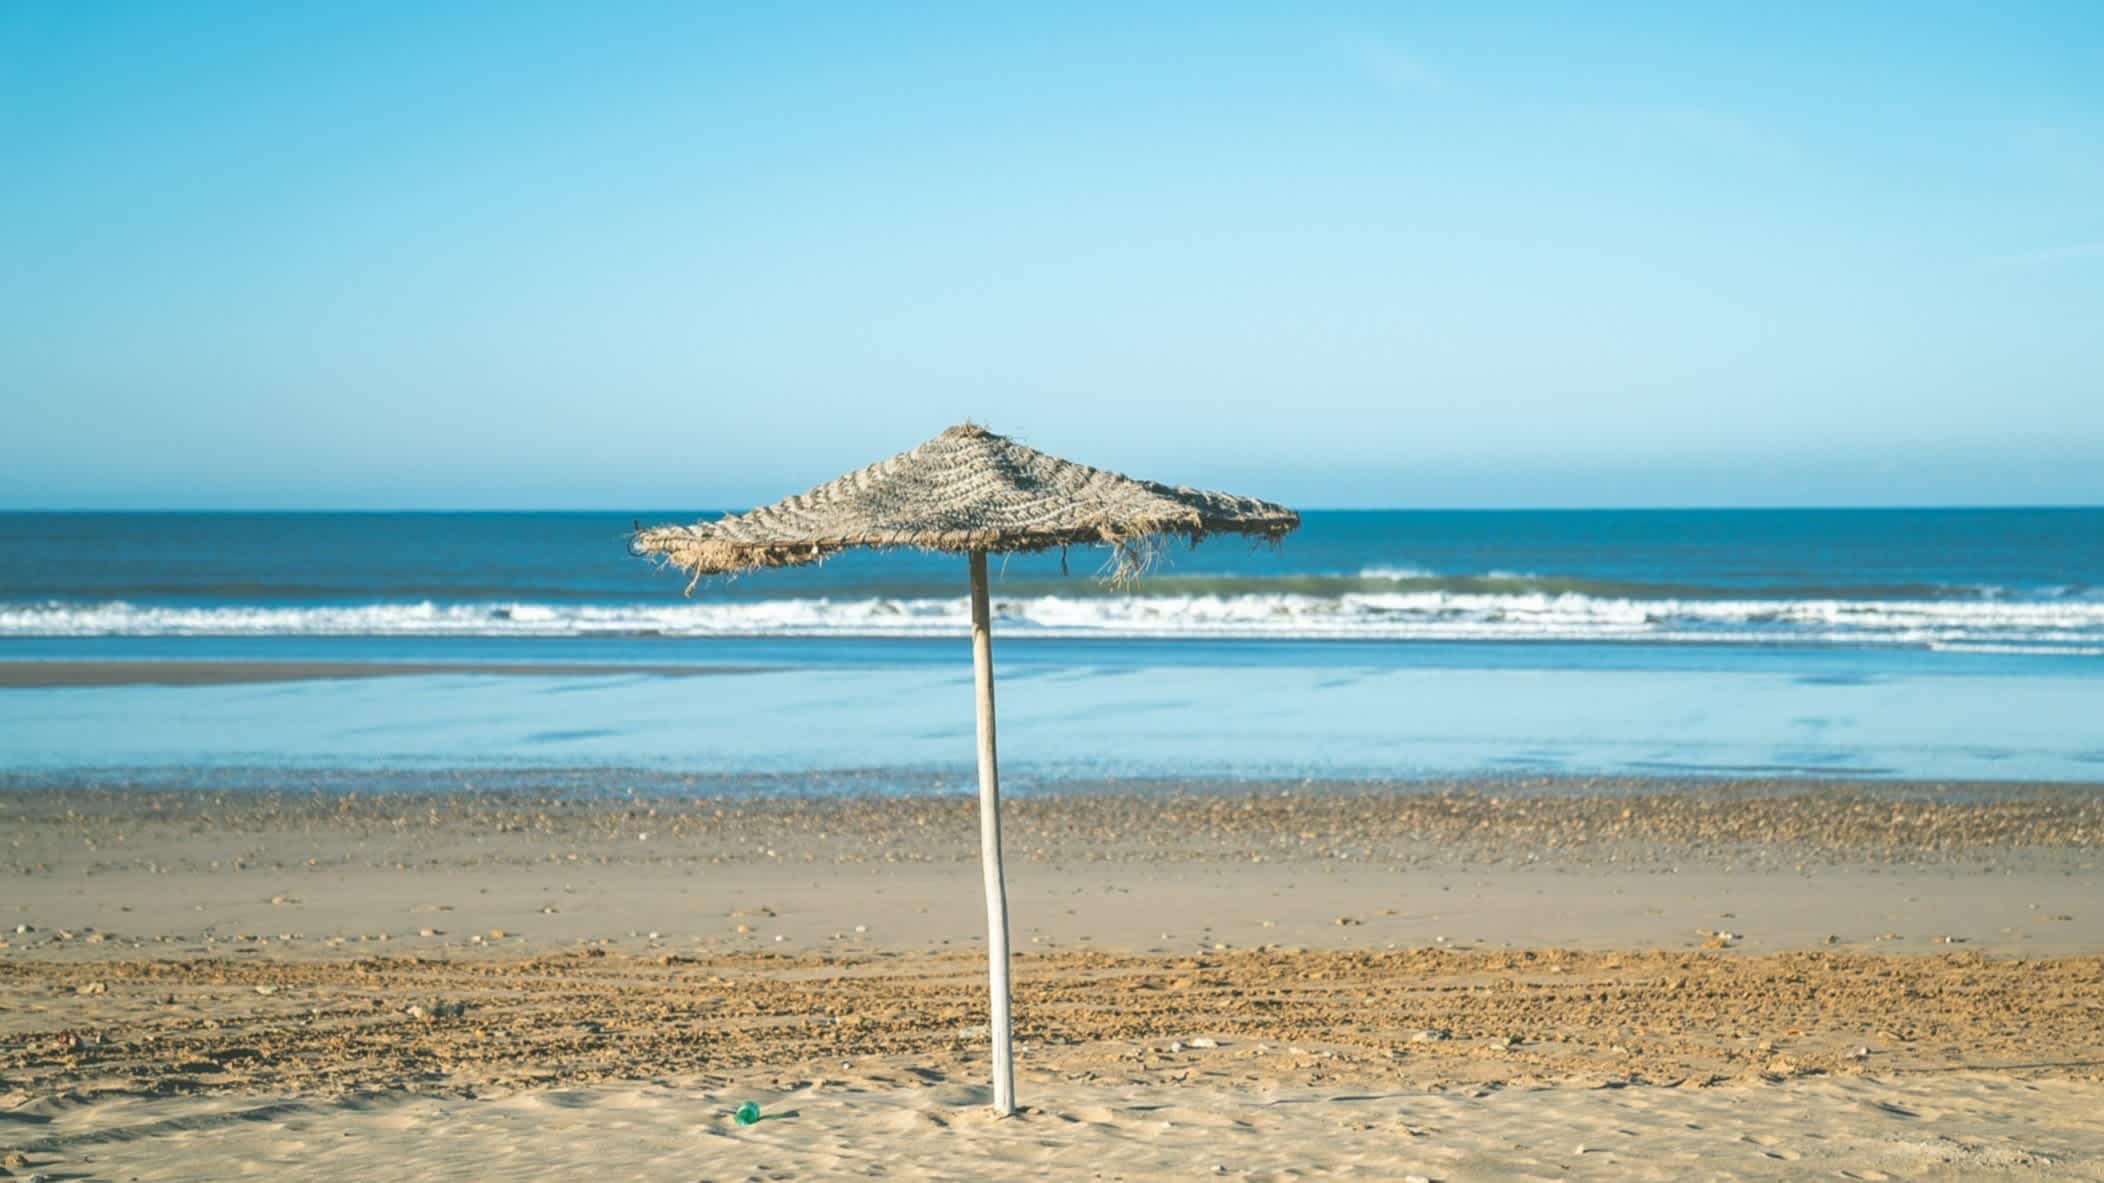 Ein Strandschirm am Strand von Sidi Bouzid, Marokko bei Sonnenschein und mit dem blauen Meer im Hintergrund.

